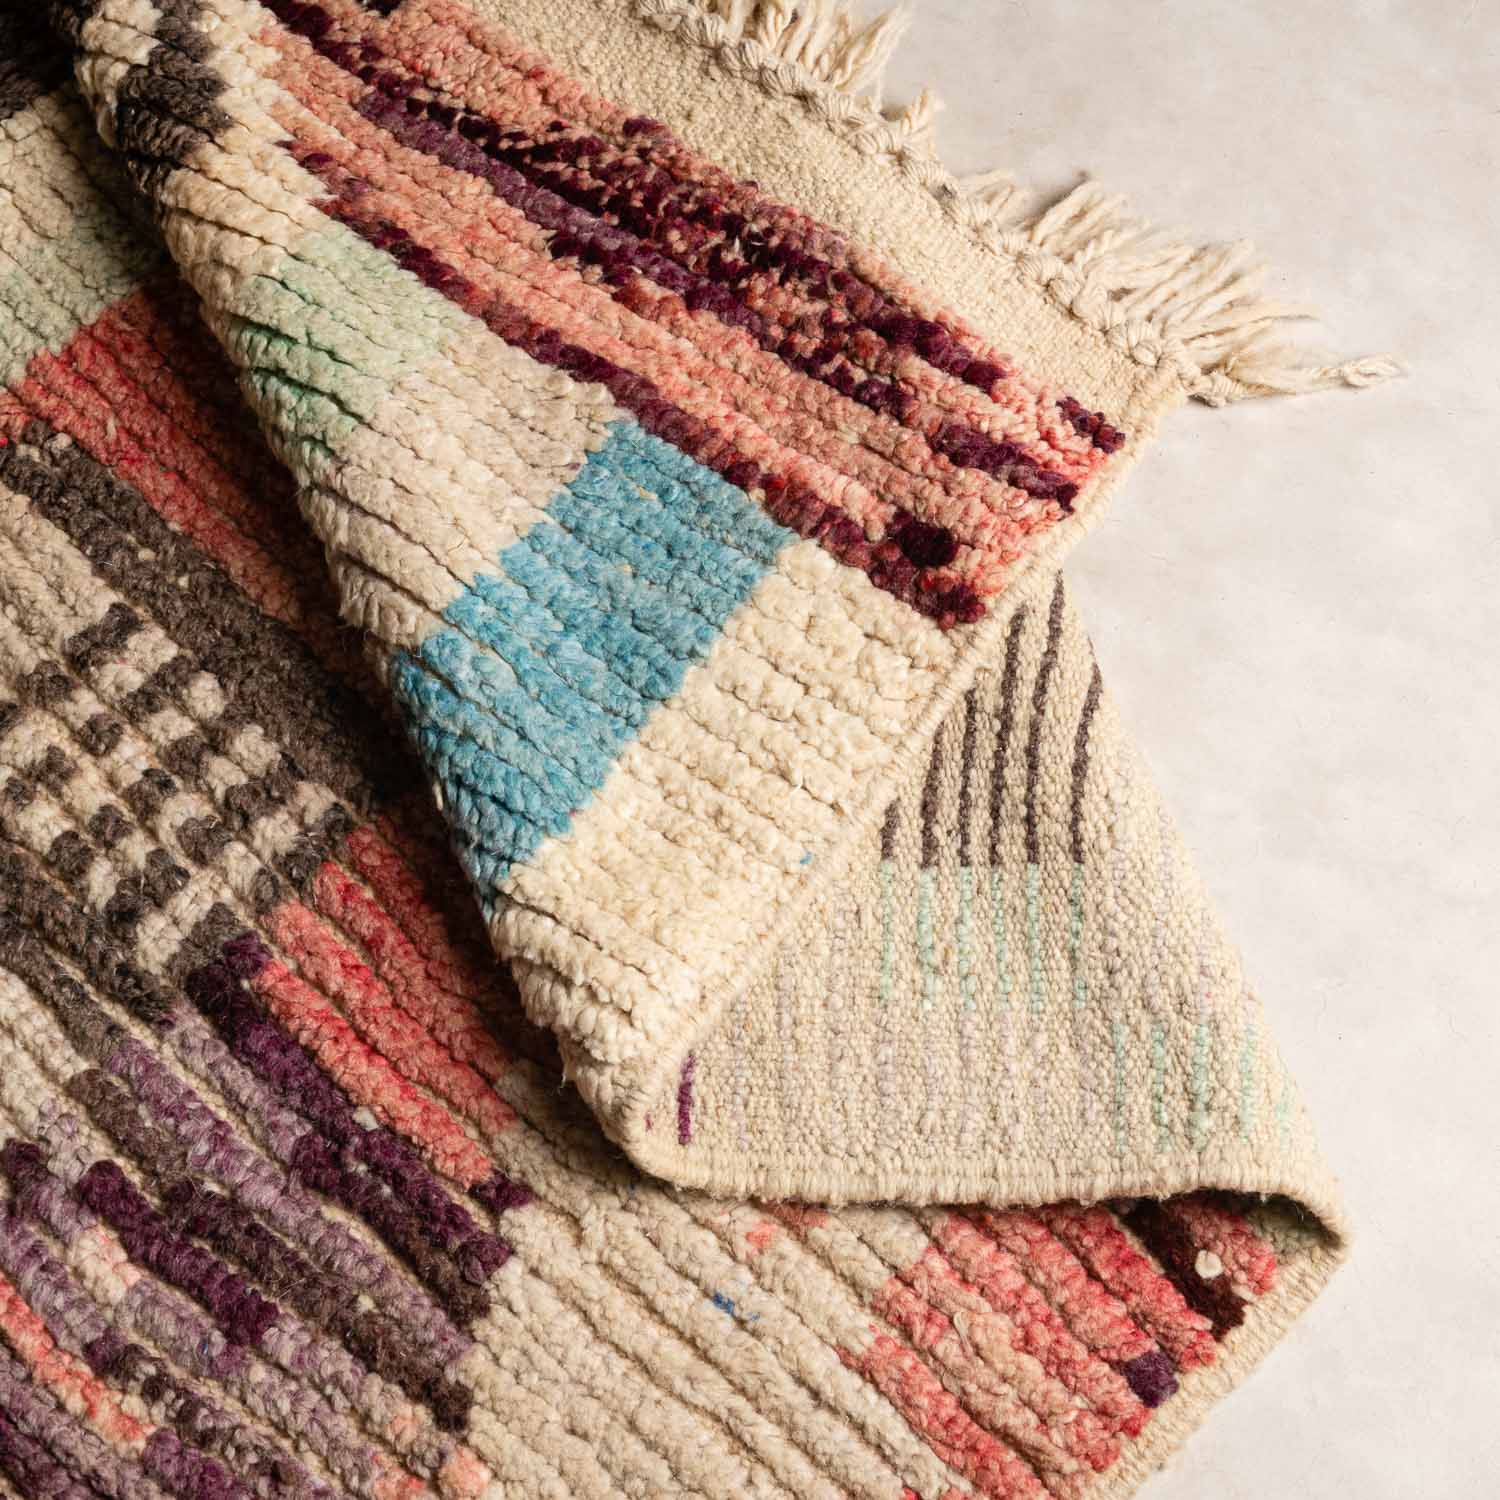 Soumia - Vintage Moroccan rug